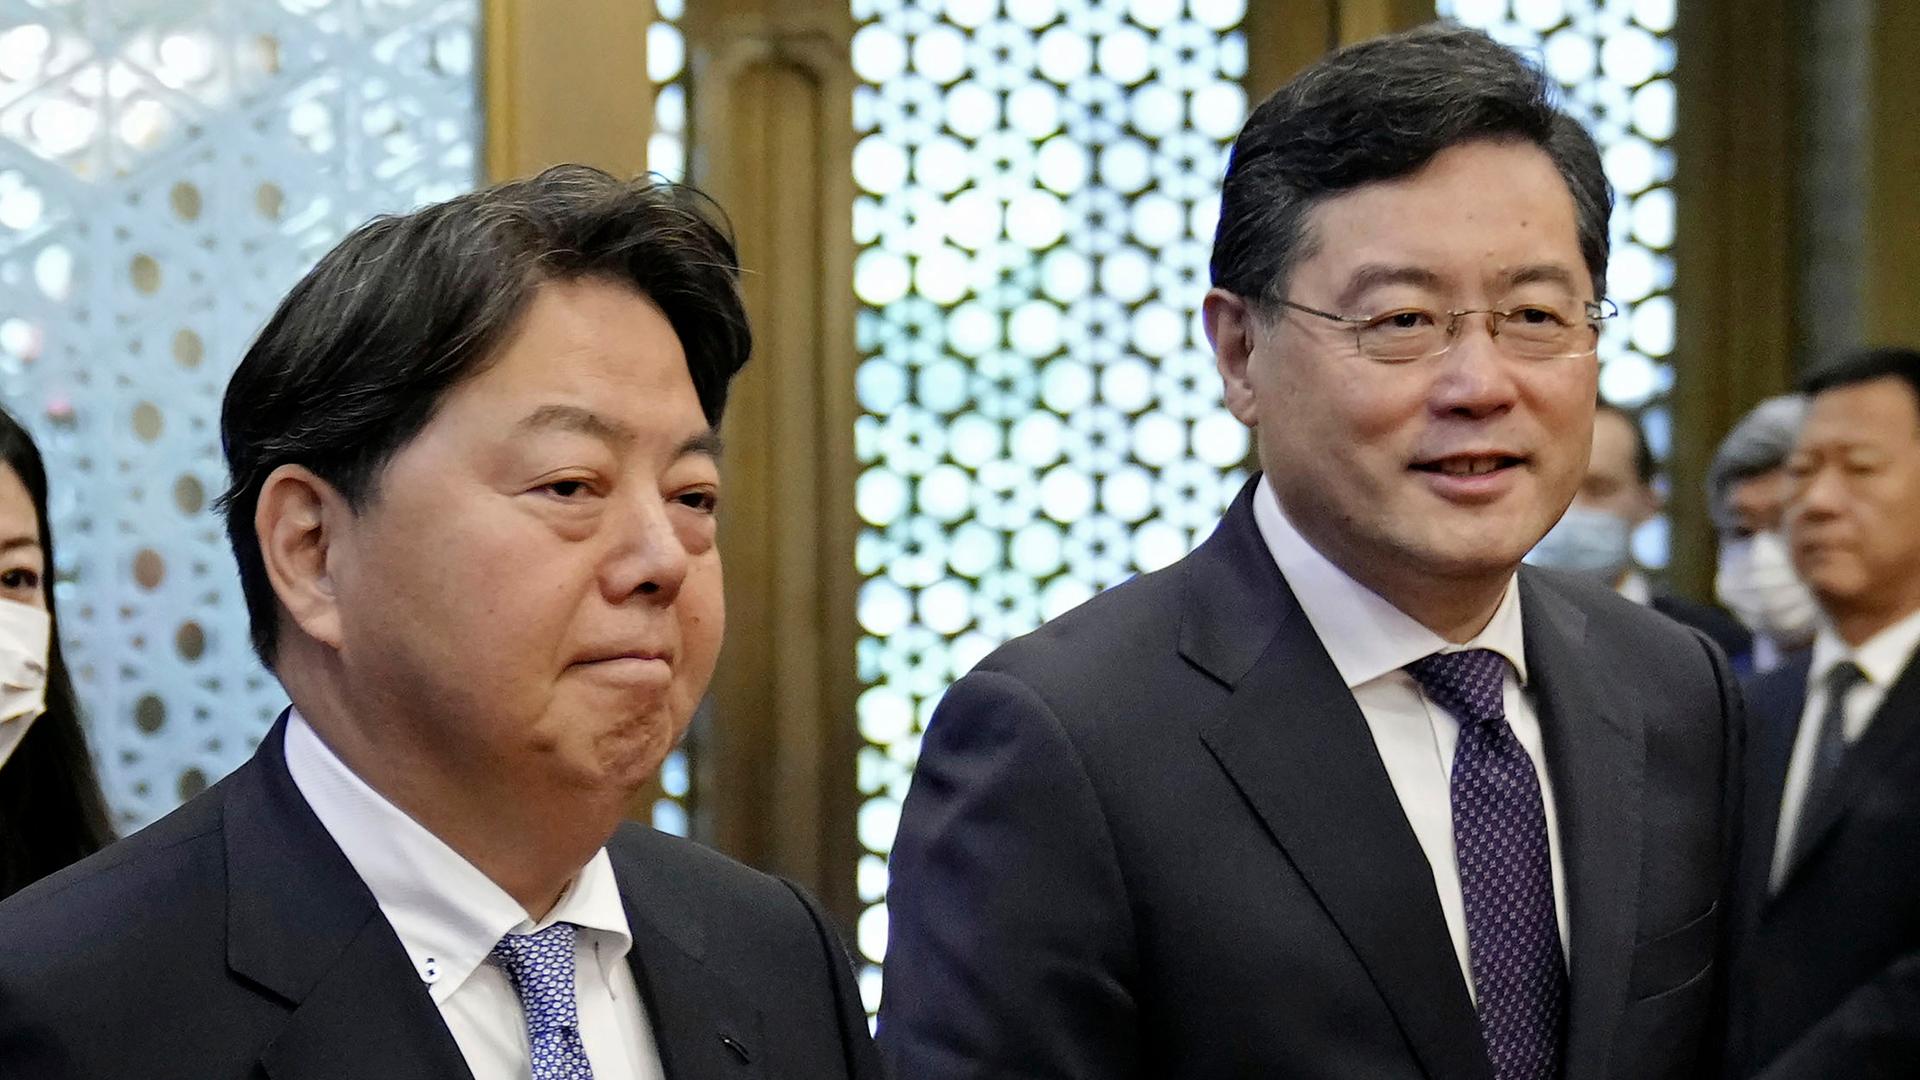 Die Außenminister Japans und Chinas stehen nebeneinander. Beide lächeln verhalten.